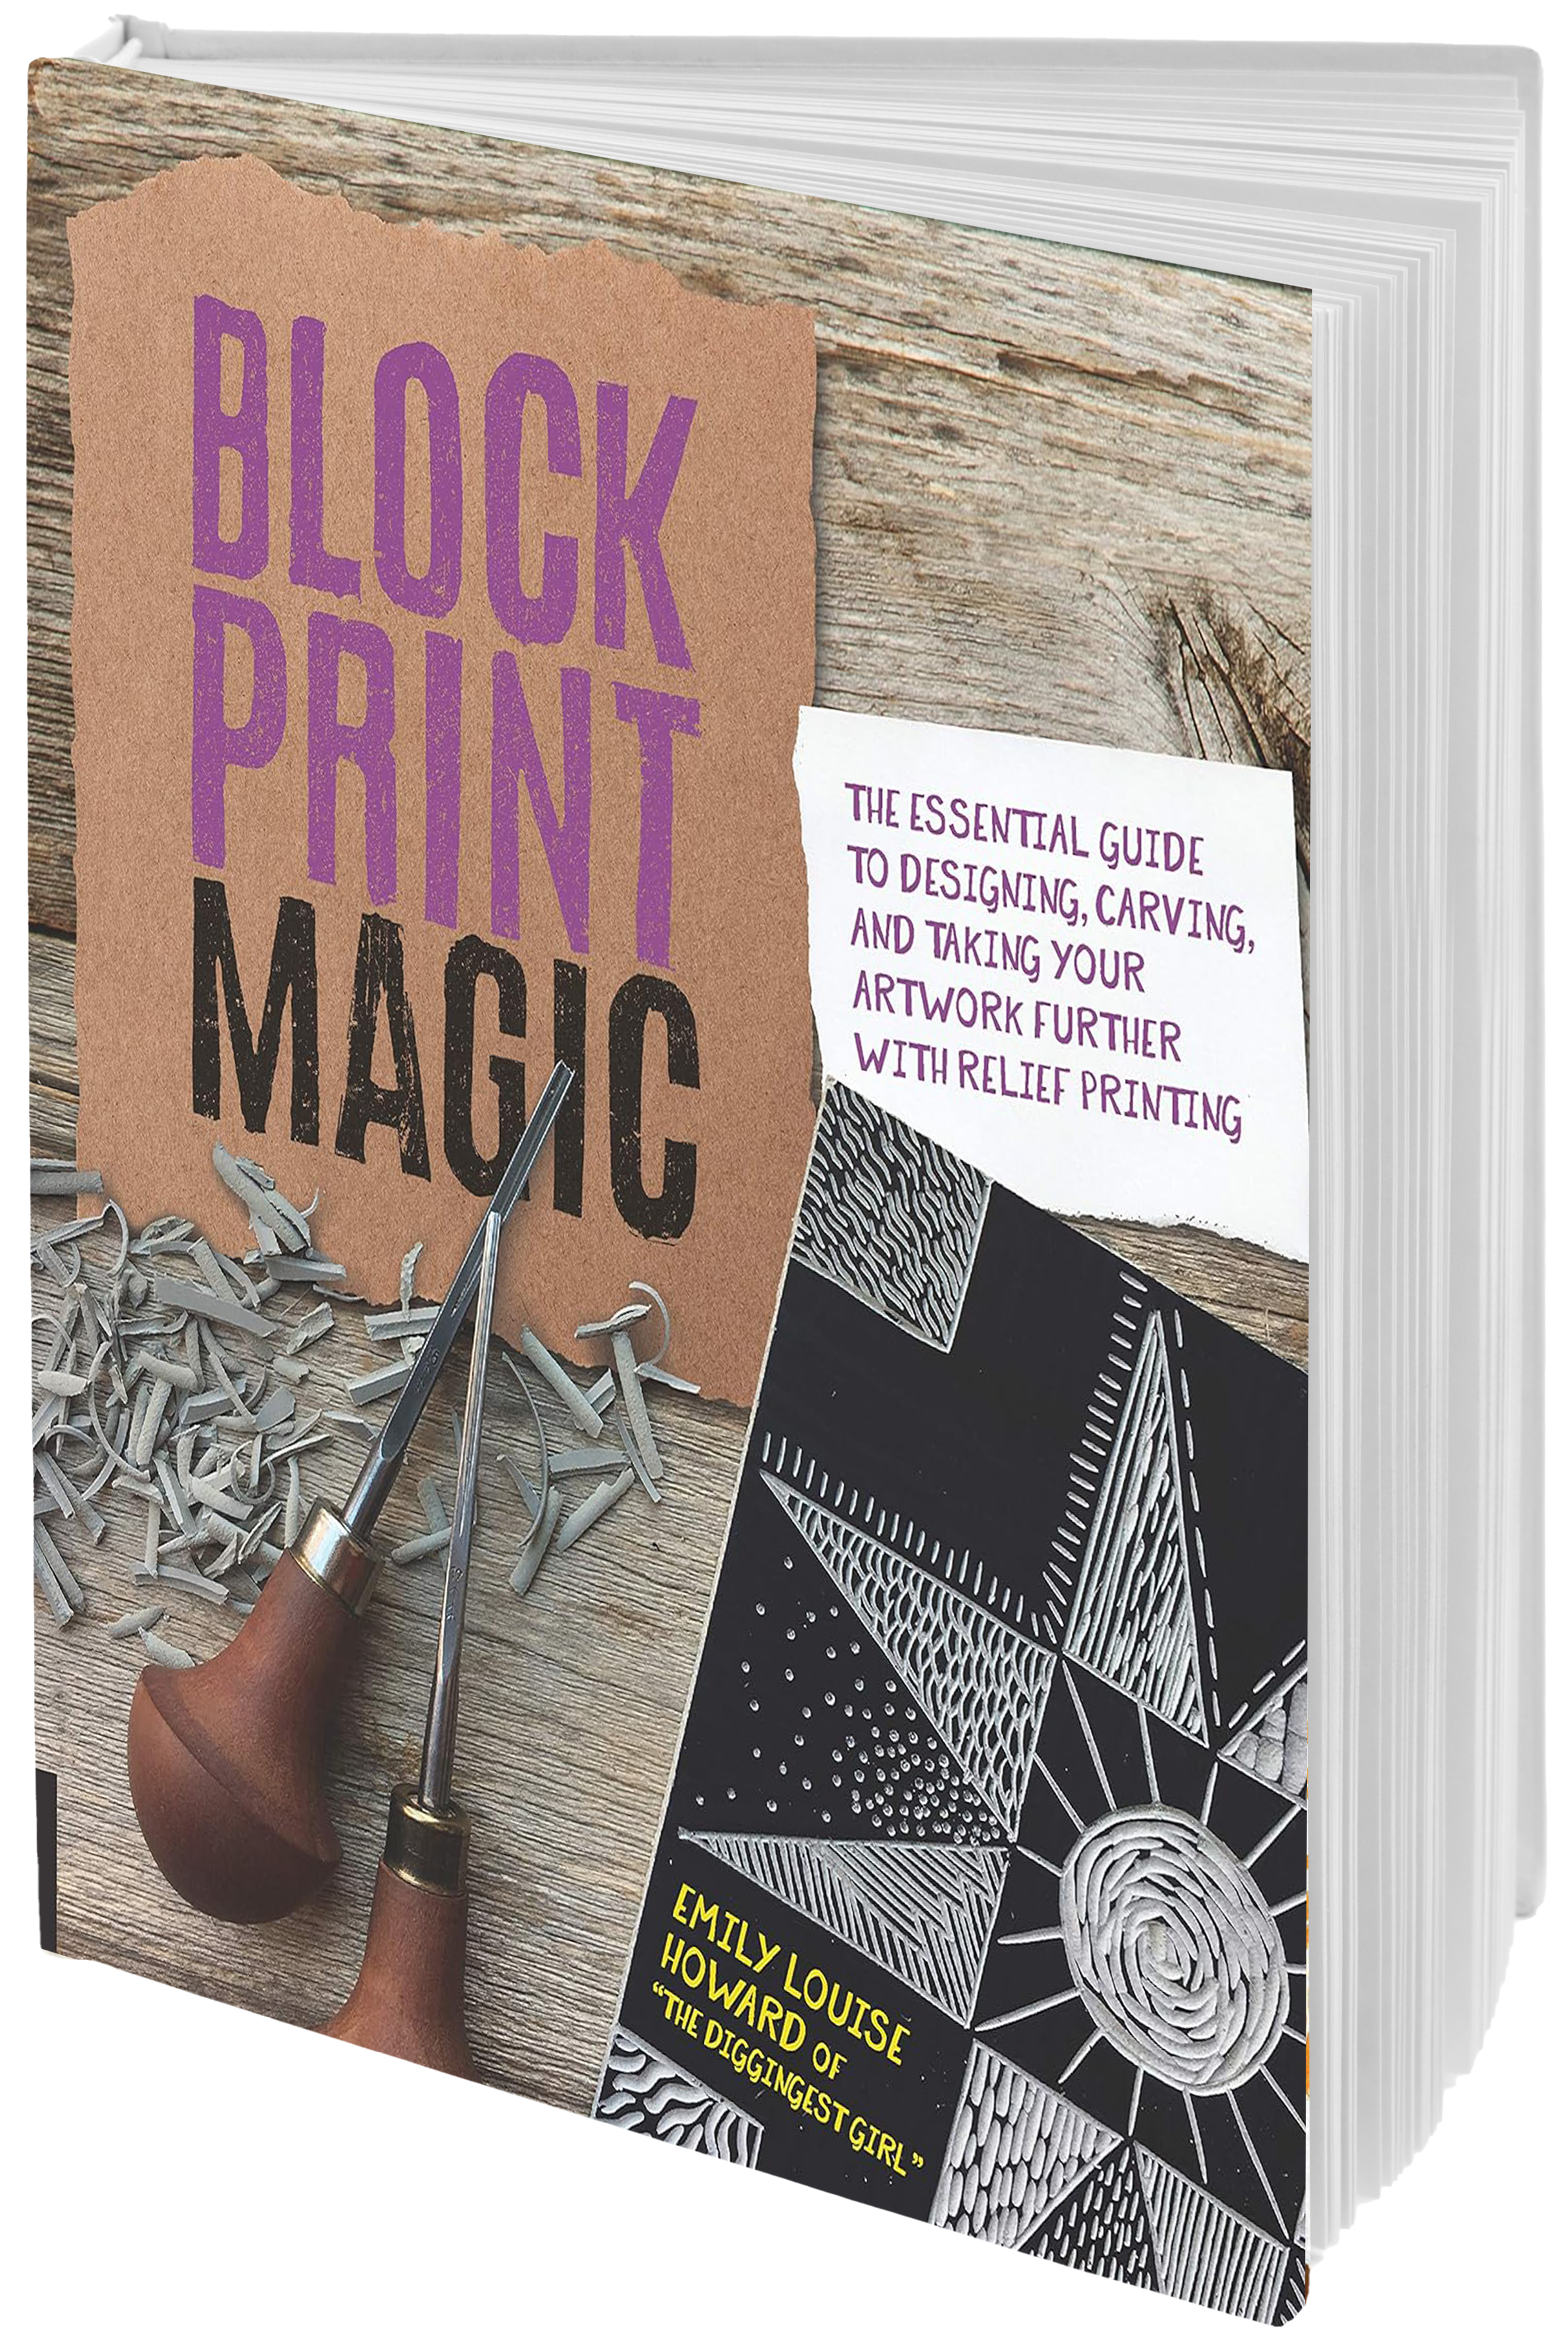 block print magic